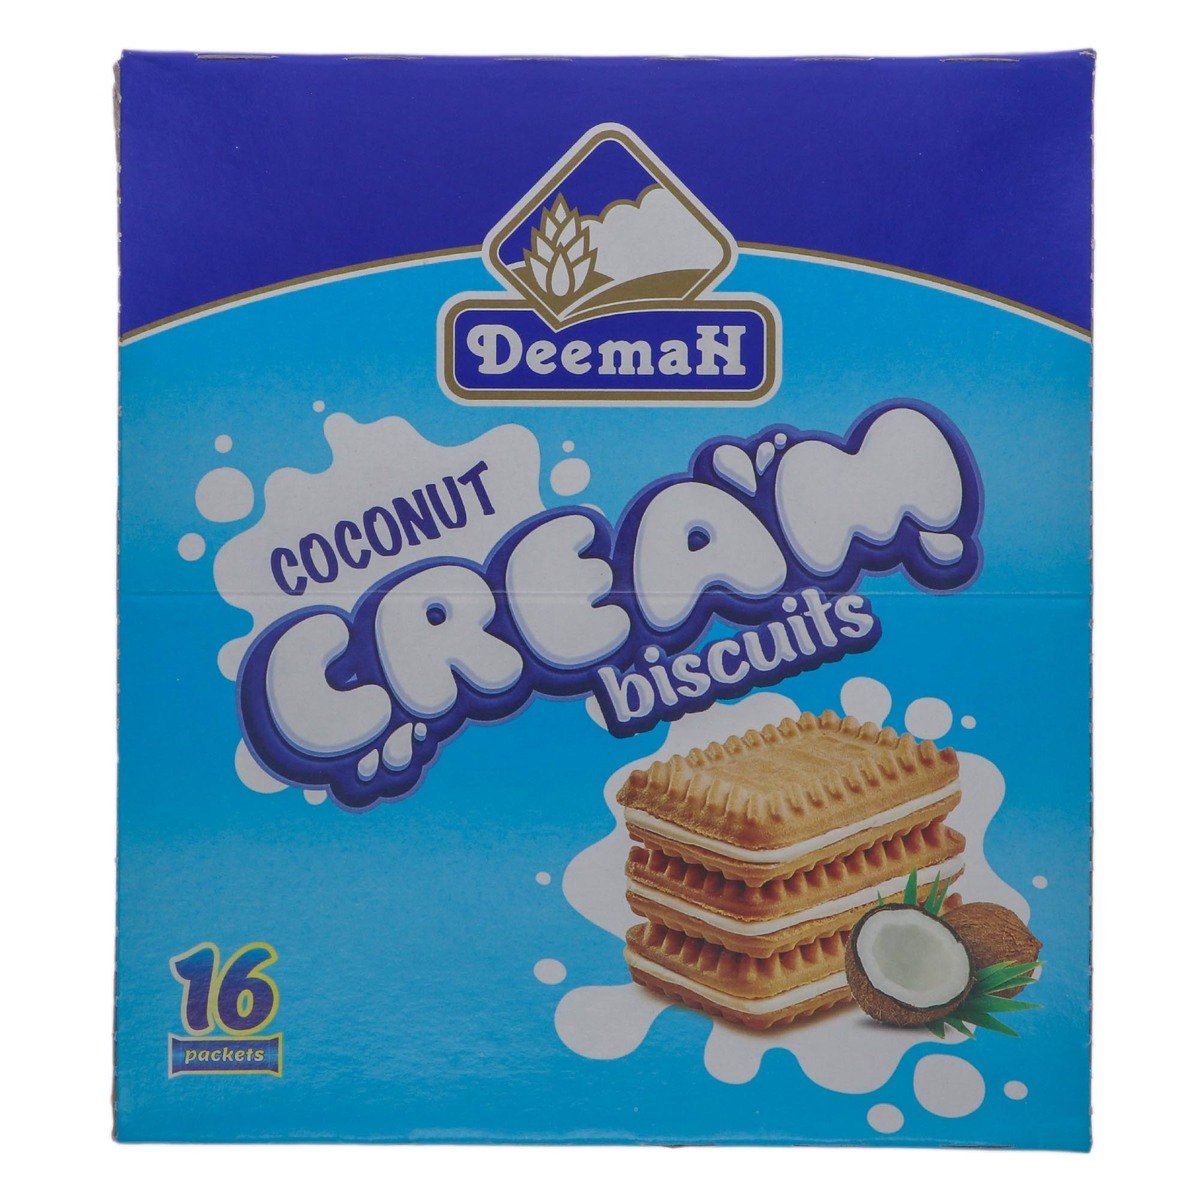 Deemah Coconut Cream Biscuits 16 x 27g